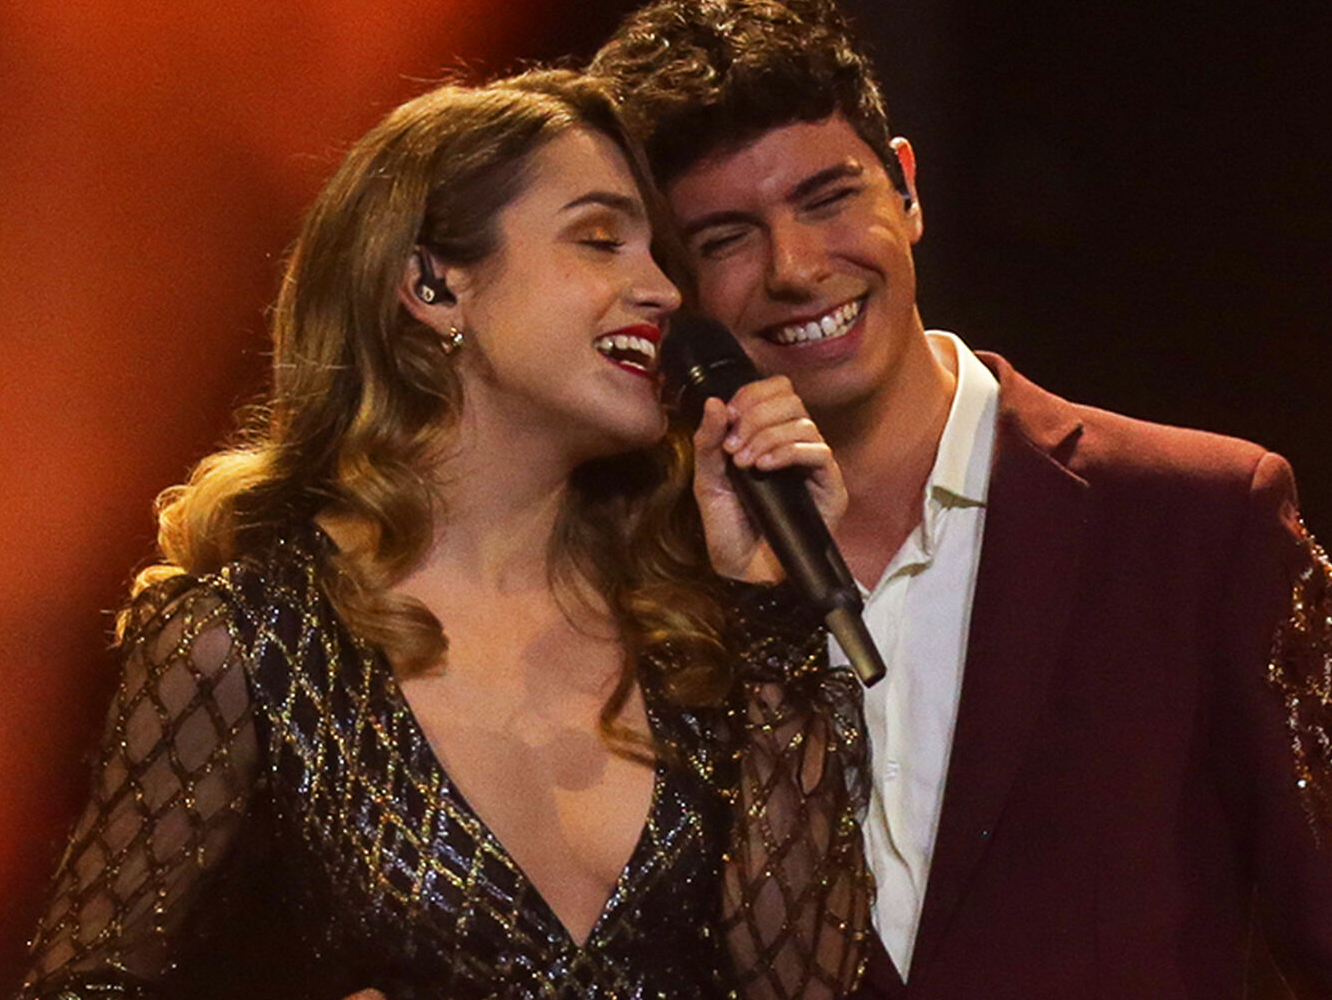  Cosas que la EBU podría haber quitado a España de haber habido drama en Eurovisiones anteriores